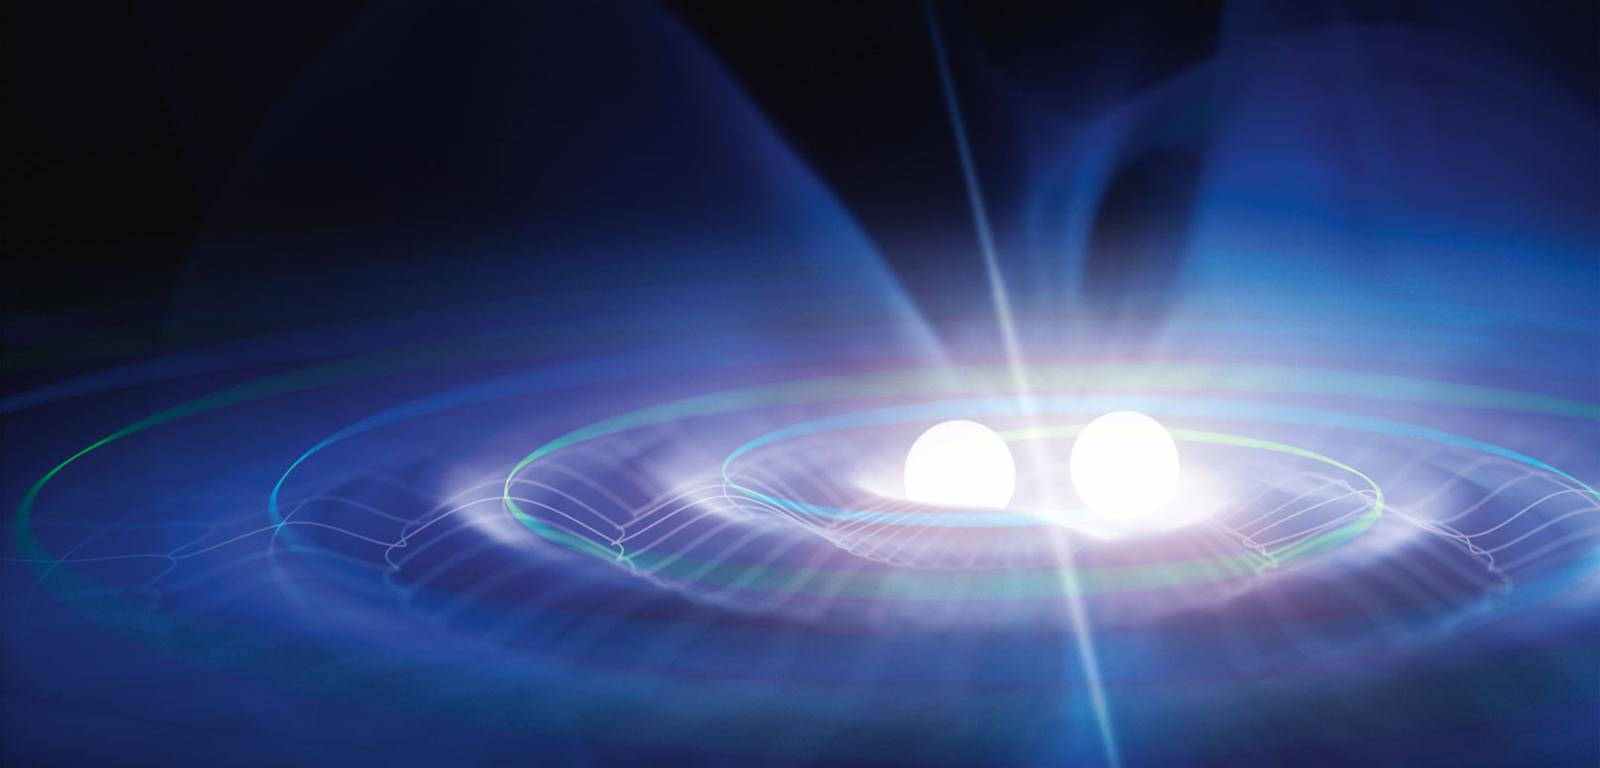 Układ podwójny pulsarów. Krążąc wokół wspólnego środka ciężkości, dwie gwiazdy neutronowe emitują fale grawitacyjne. Fale te zwiększają amplitudę, czyli moc promieniowania, gdy dochodzi do kolizji obiektów.